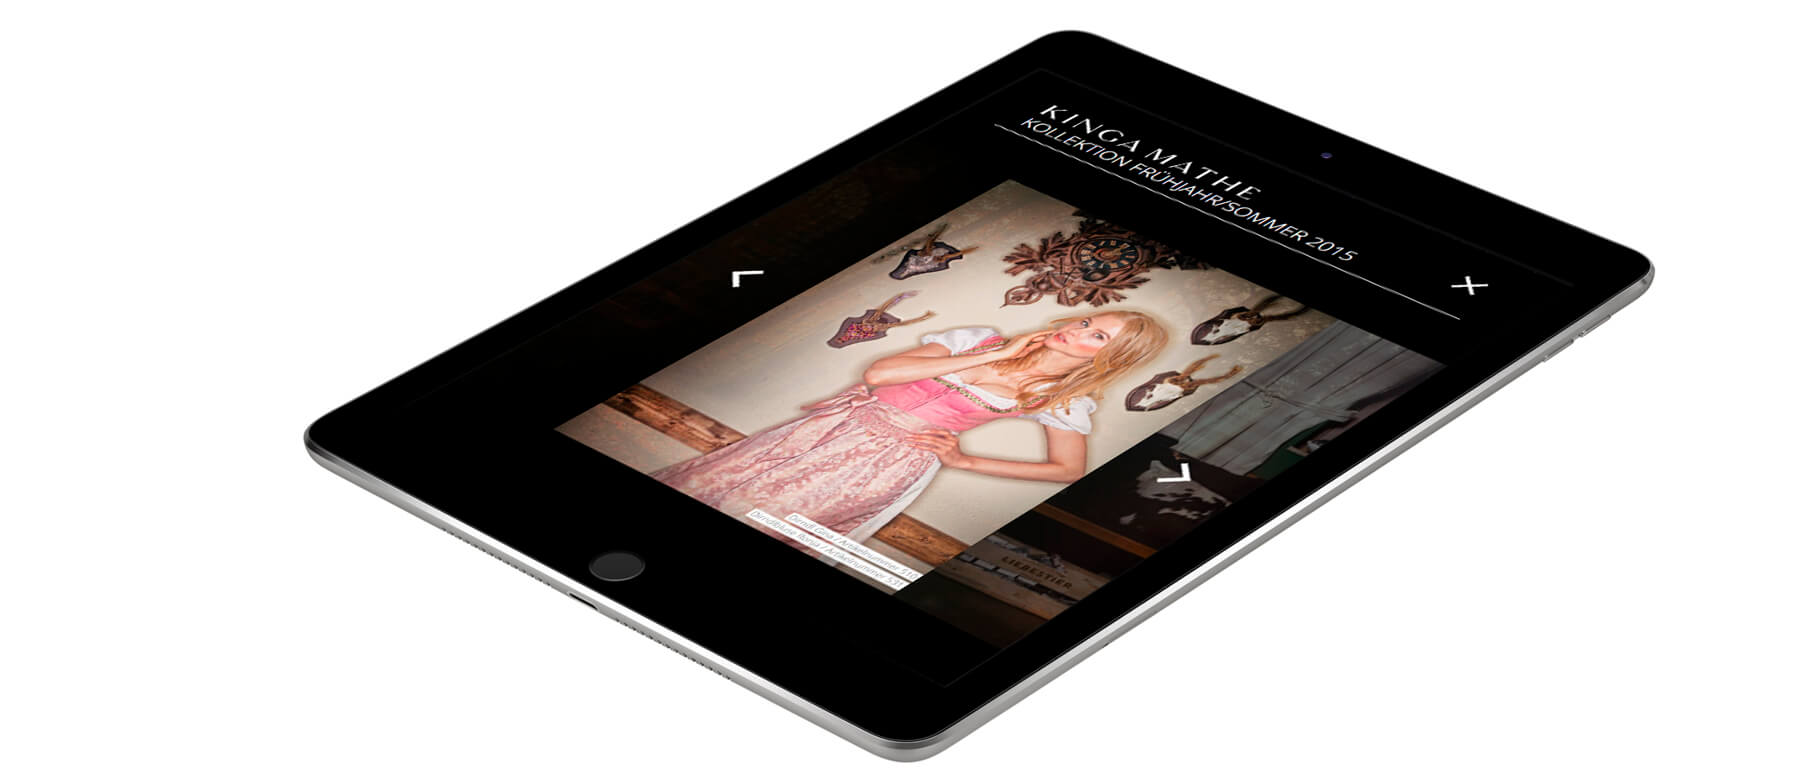 Mockup der Kinga Mathe-Website dargestellt in einem iPad, Bild aus einer Dirndl-Kollektion